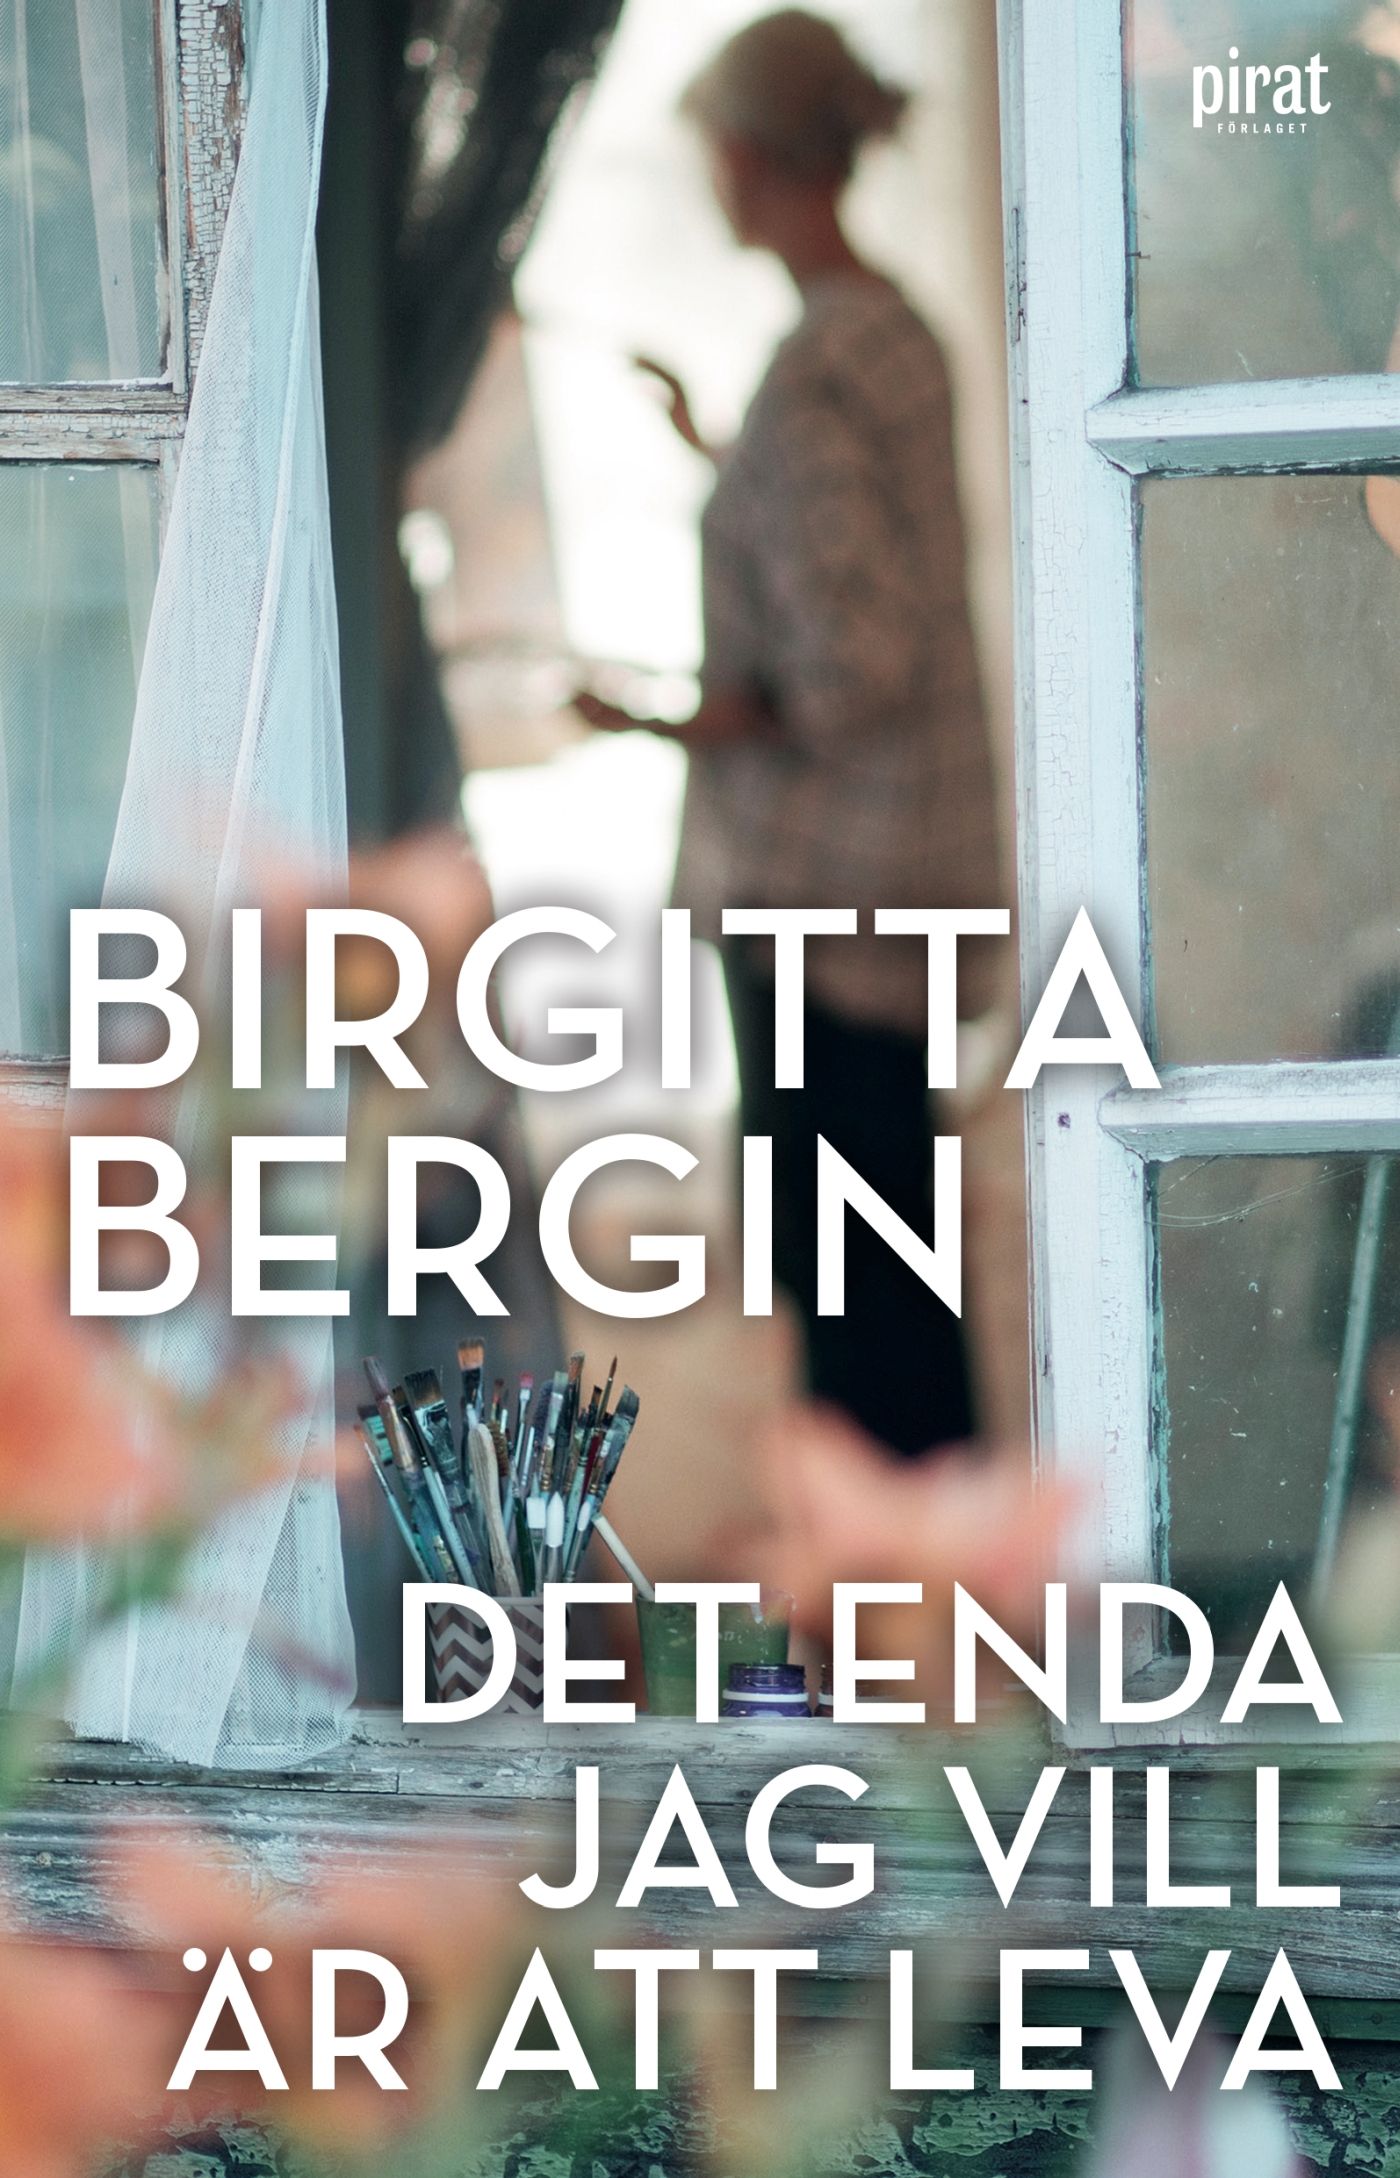 Det enda jag vill är att leva, eBook by Birgitta Bergin